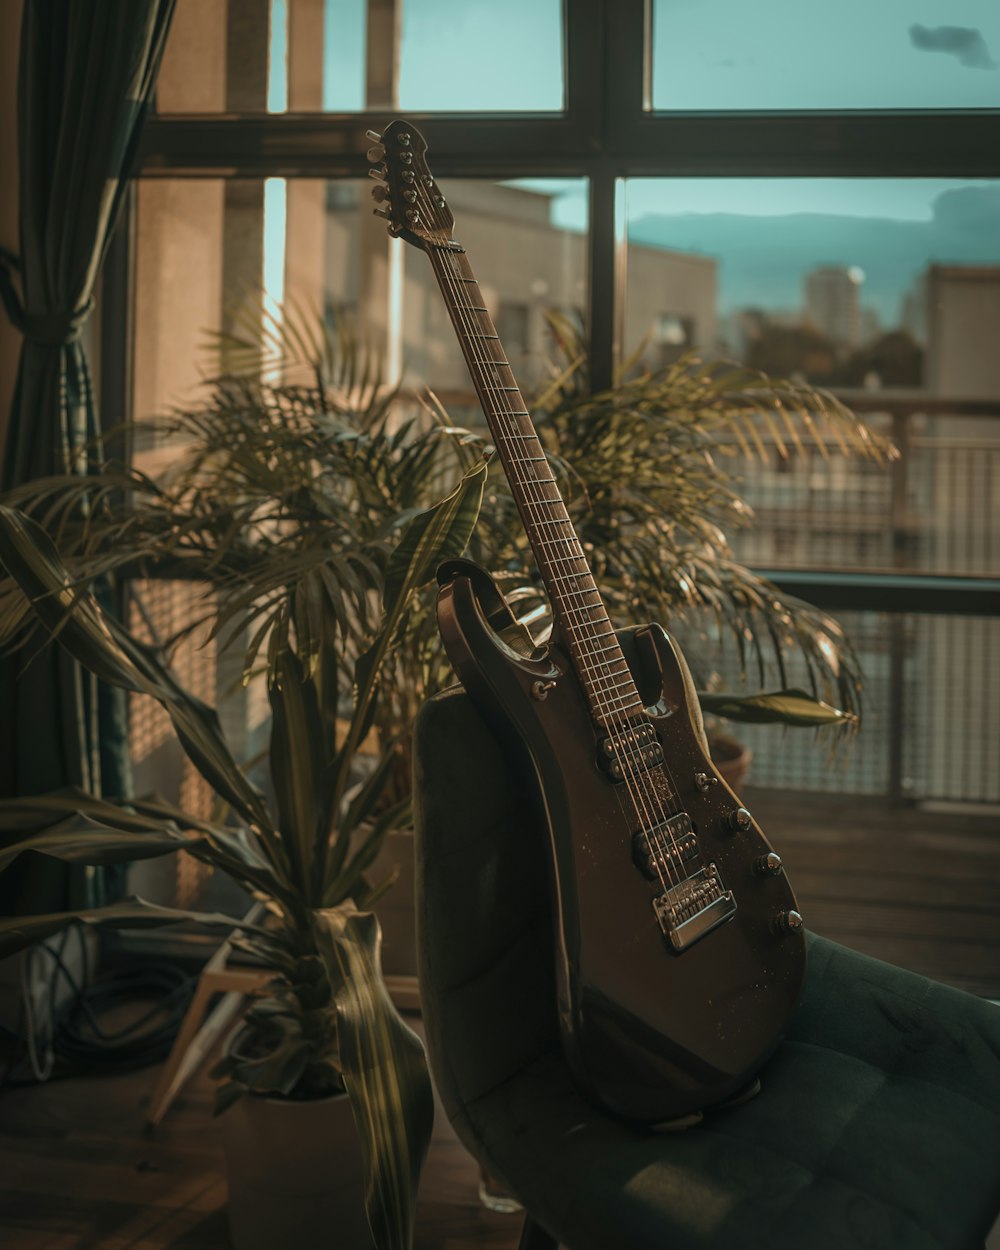 窓の前の椅子に座っているギター